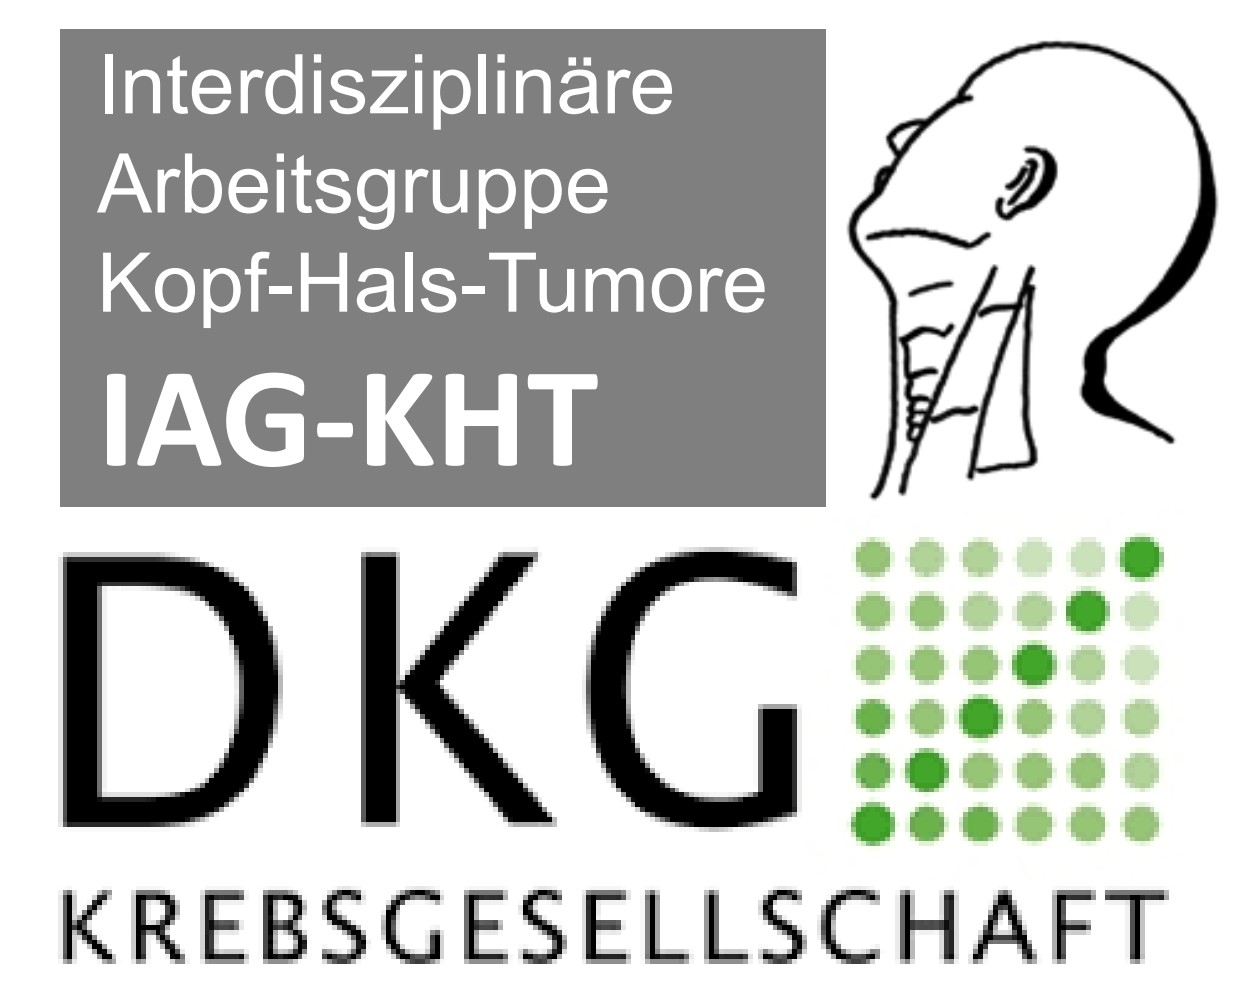 Herzliche Einladung zum Herbstsymposium der IAG-KHT am 19.10.2022